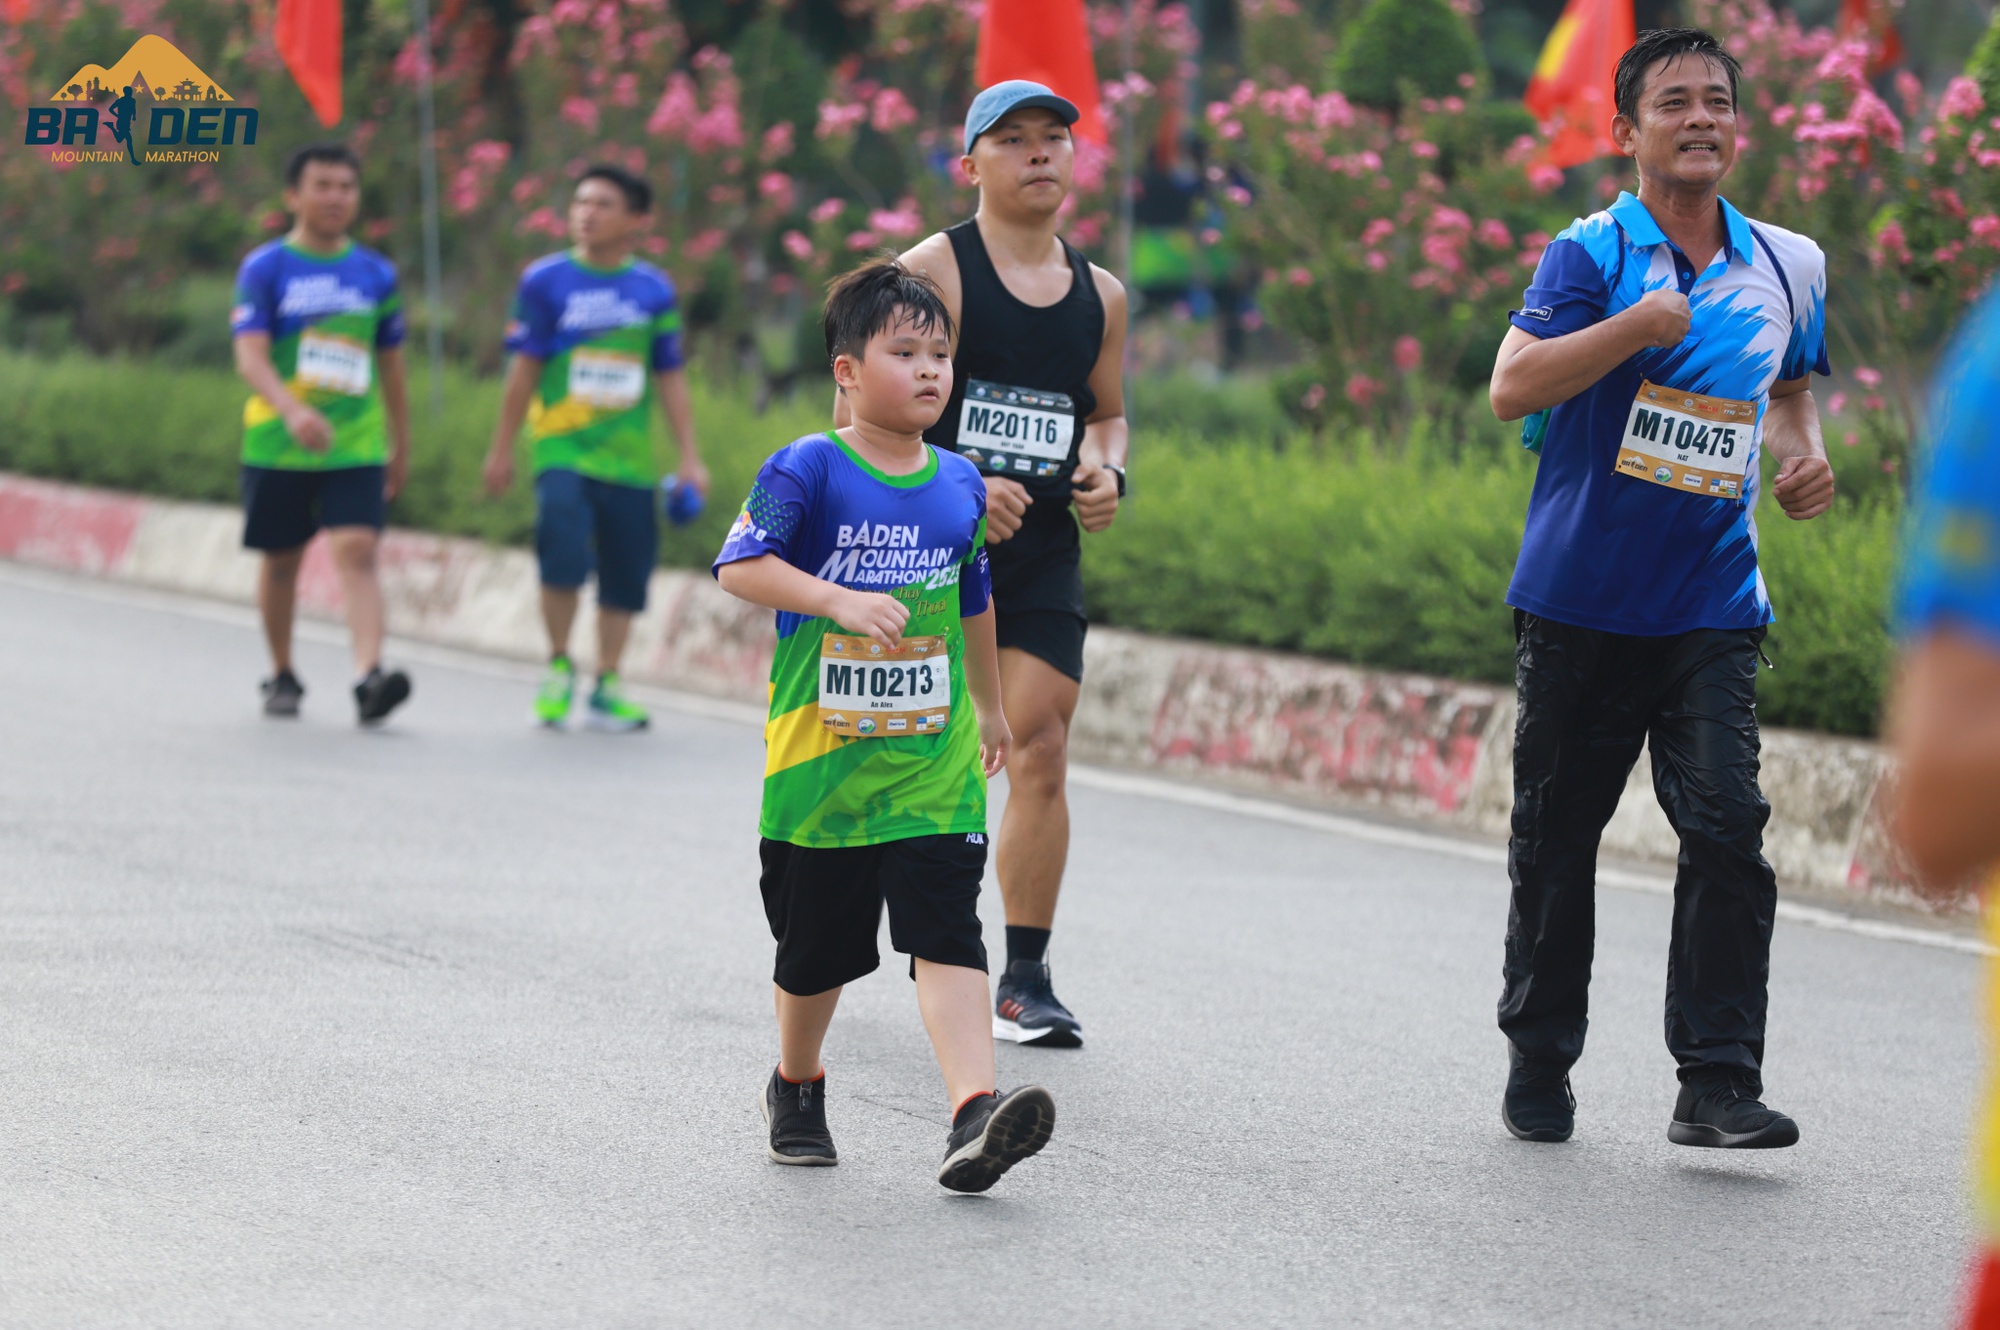 Muôn kiểu cosplay lạ mắt chỉ có ở đường chạy marathon Tây Ninh - Ảnh 4.